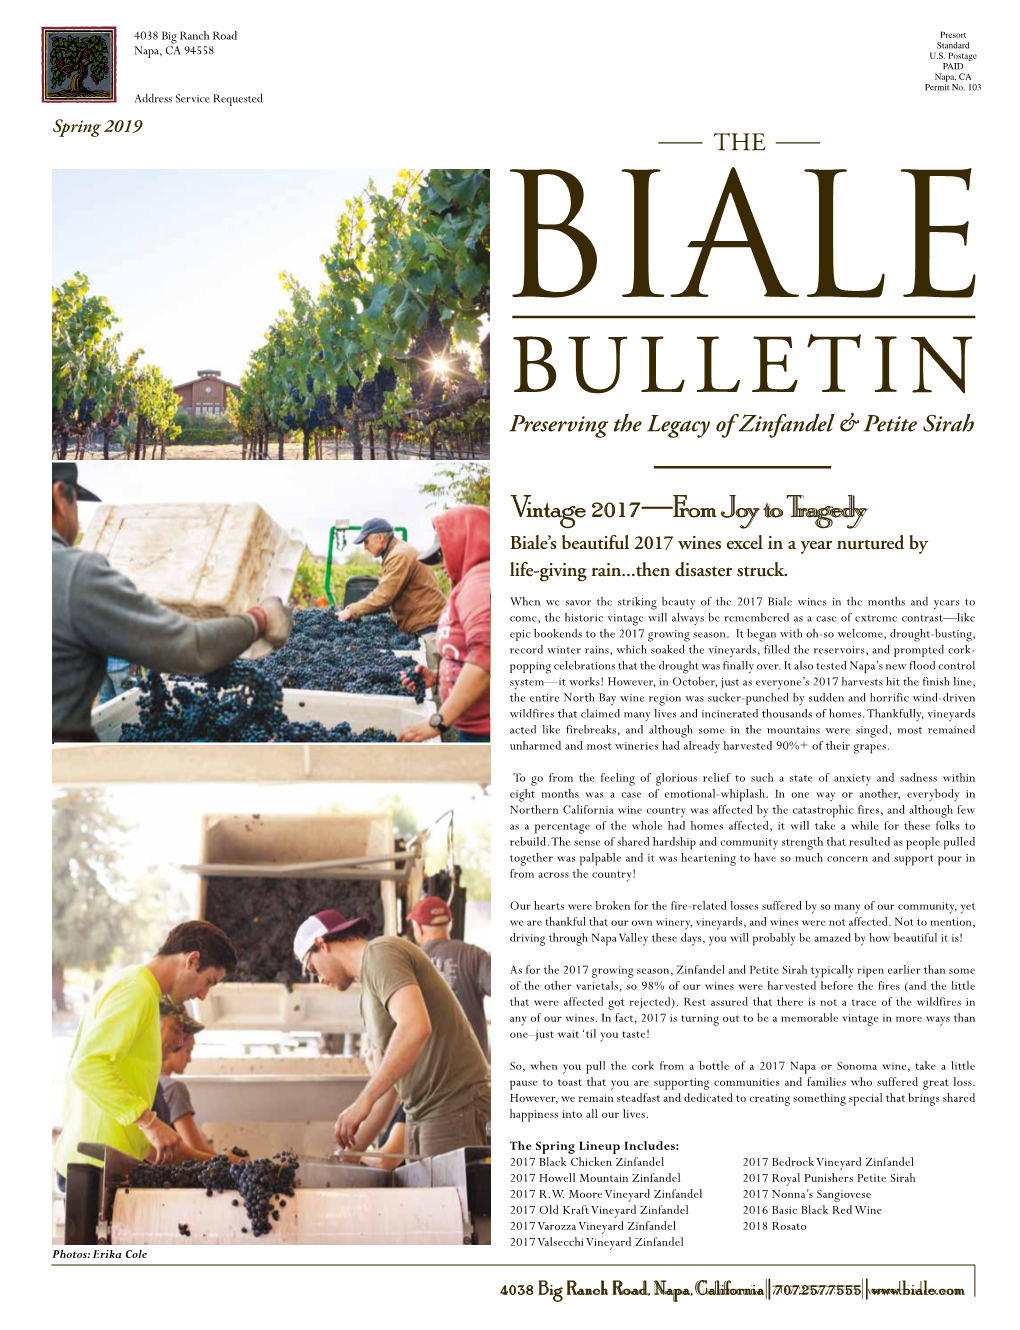 Biale Bulletin Spring 2019